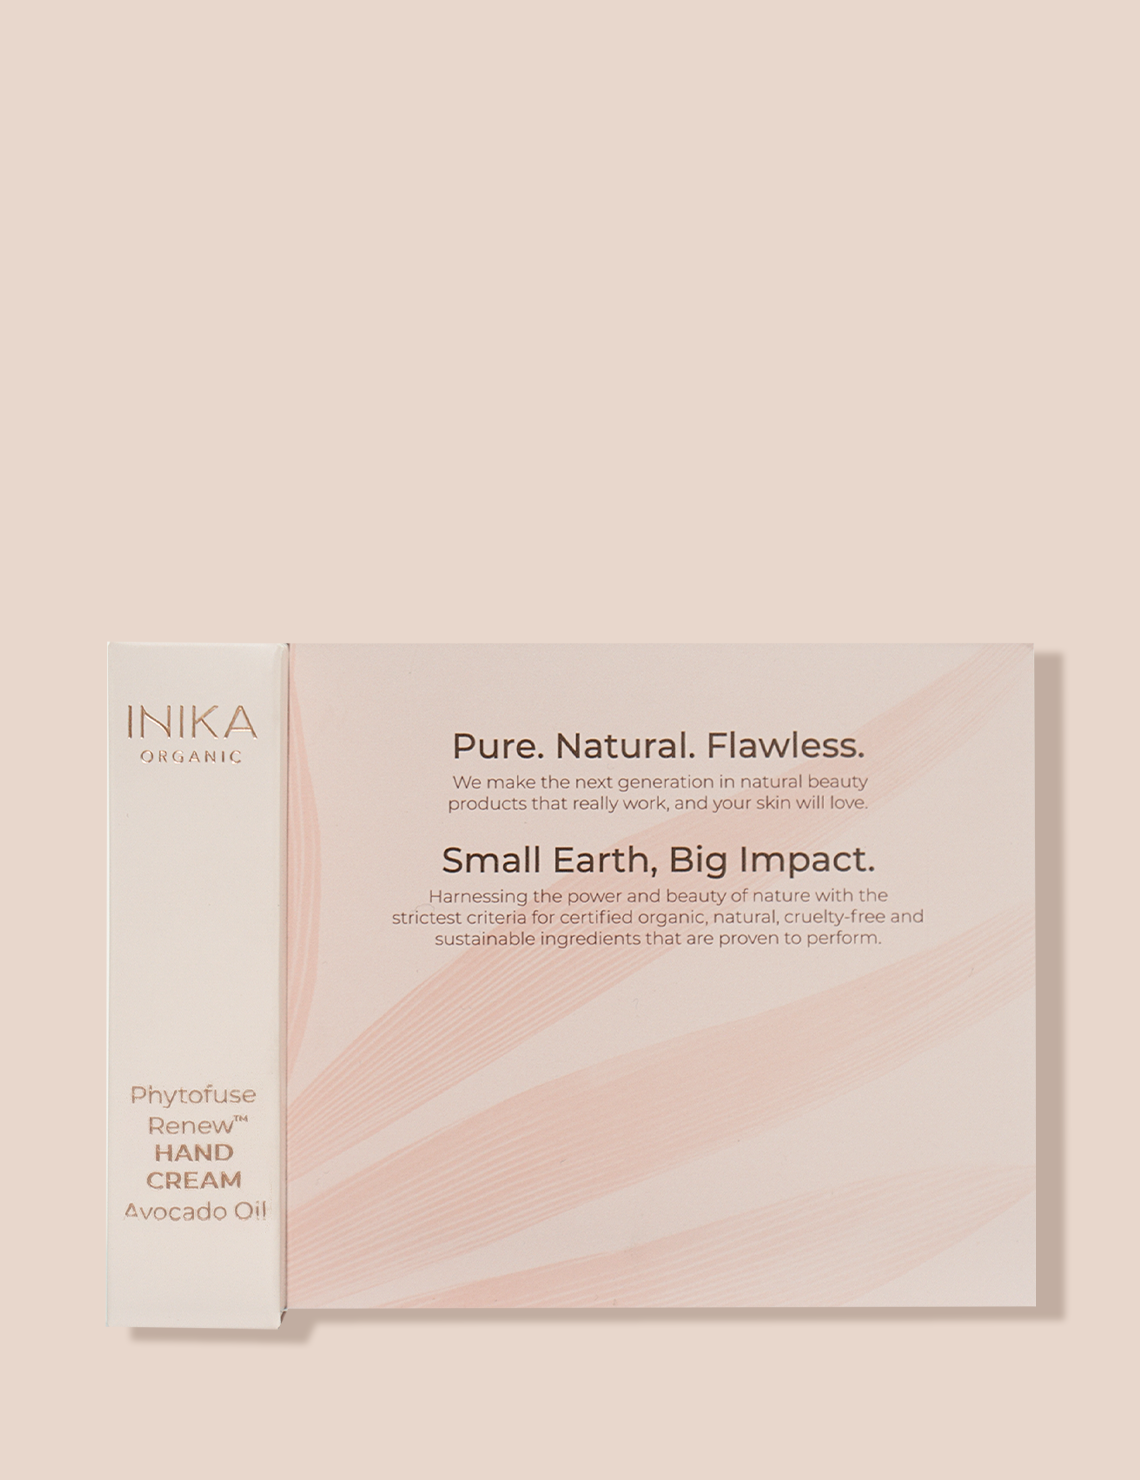 INIKA Organic Phytofuse Renew Hand Cream 4ml (Boxed)